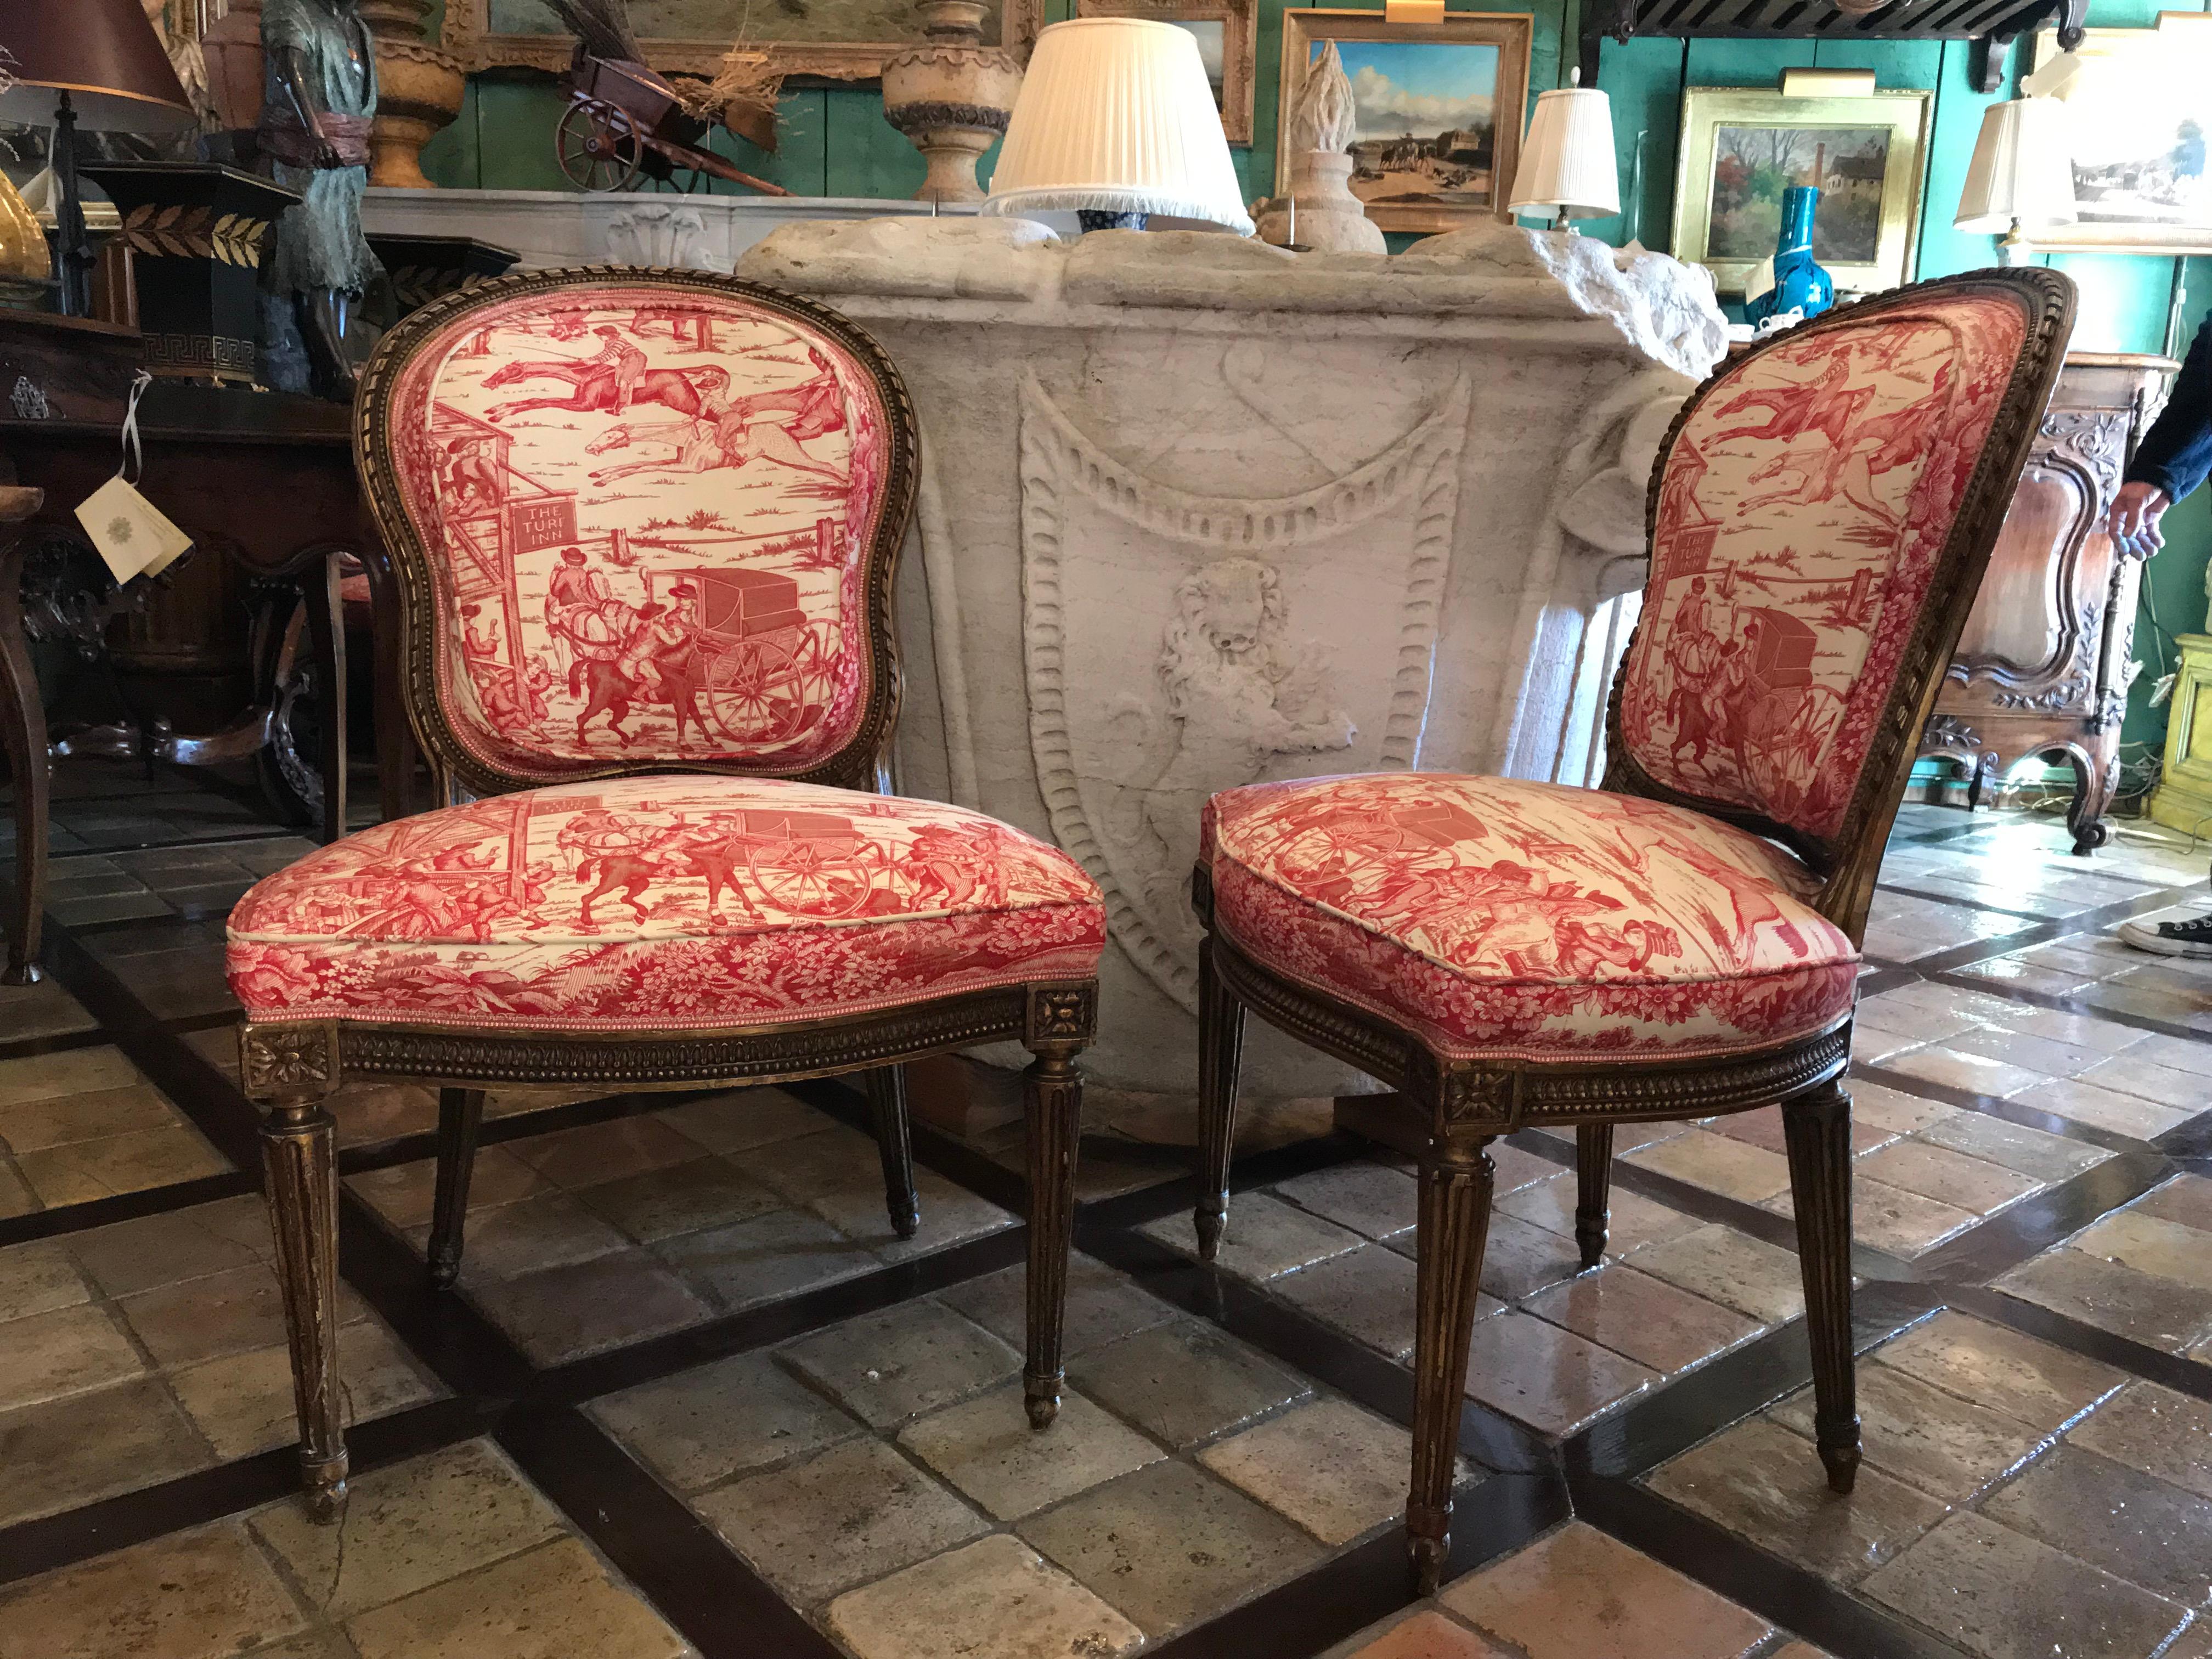 Ensemble de huit chaises françaises du XIXe siècle.
Chaise de salle à manger dorée de style Louis XVI avec de belles sculptures tout autour du dossier ovale. Rembourré en tissu rose et crème clair.
Chaque chaise est surélevée par des pieds cannelés